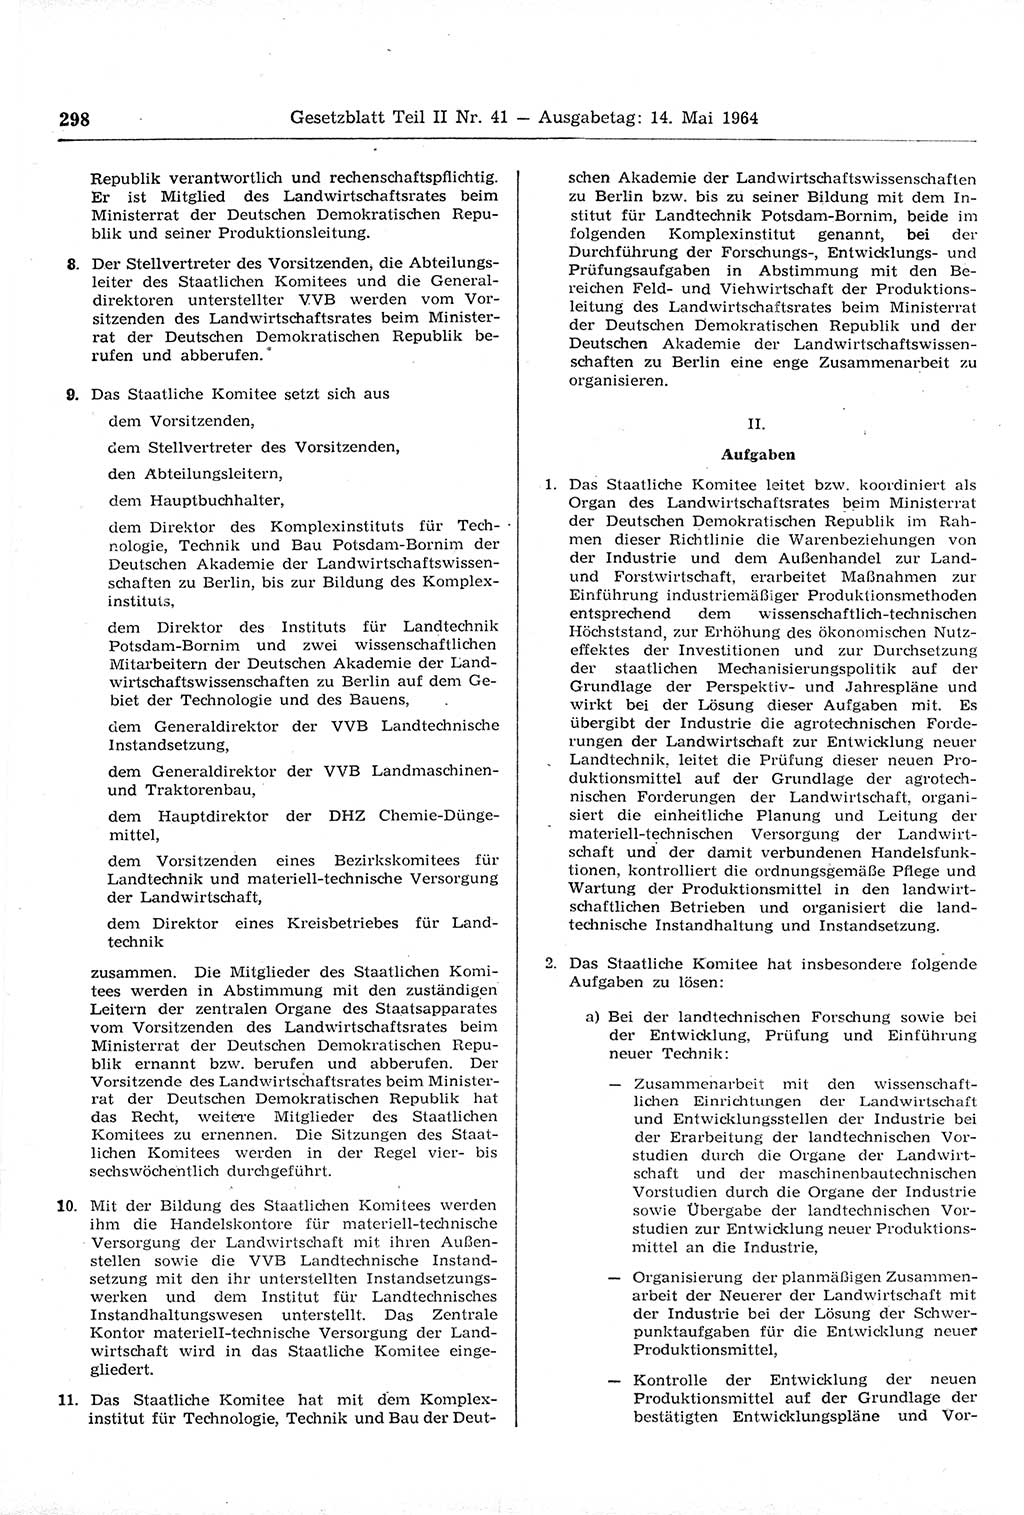 Gesetzblatt (GBl.) der Deutschen Demokratischen Republik (DDR) Teil ⅠⅠ 1964, Seite 298 (GBl. DDR ⅠⅠ 1964, S. 298)